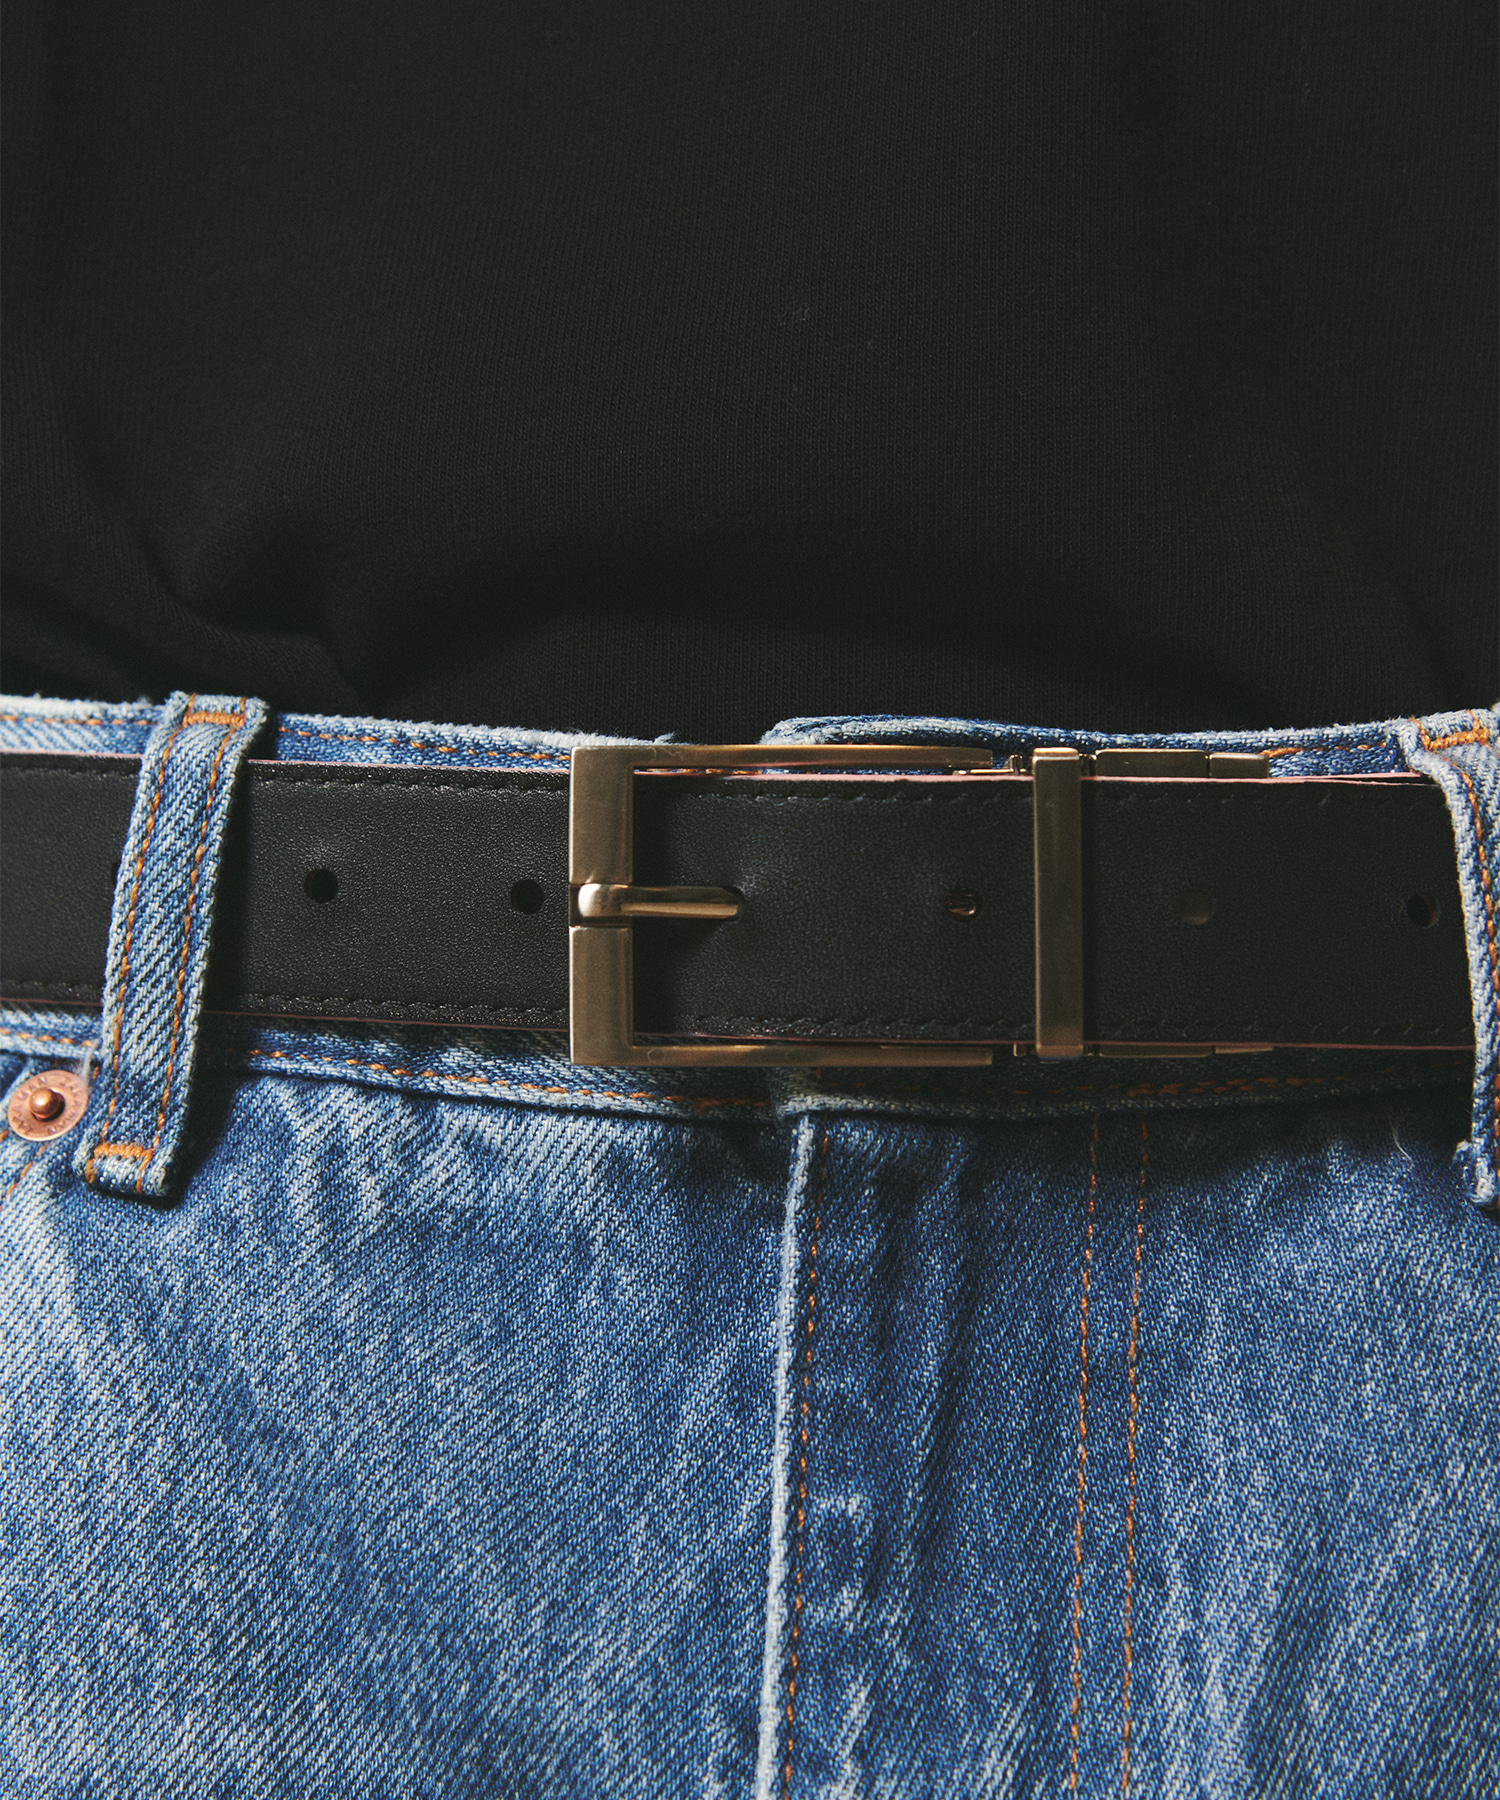 [천연소가죽]Cowhide Reversible Hard Leather Belt BLACK/BROWN